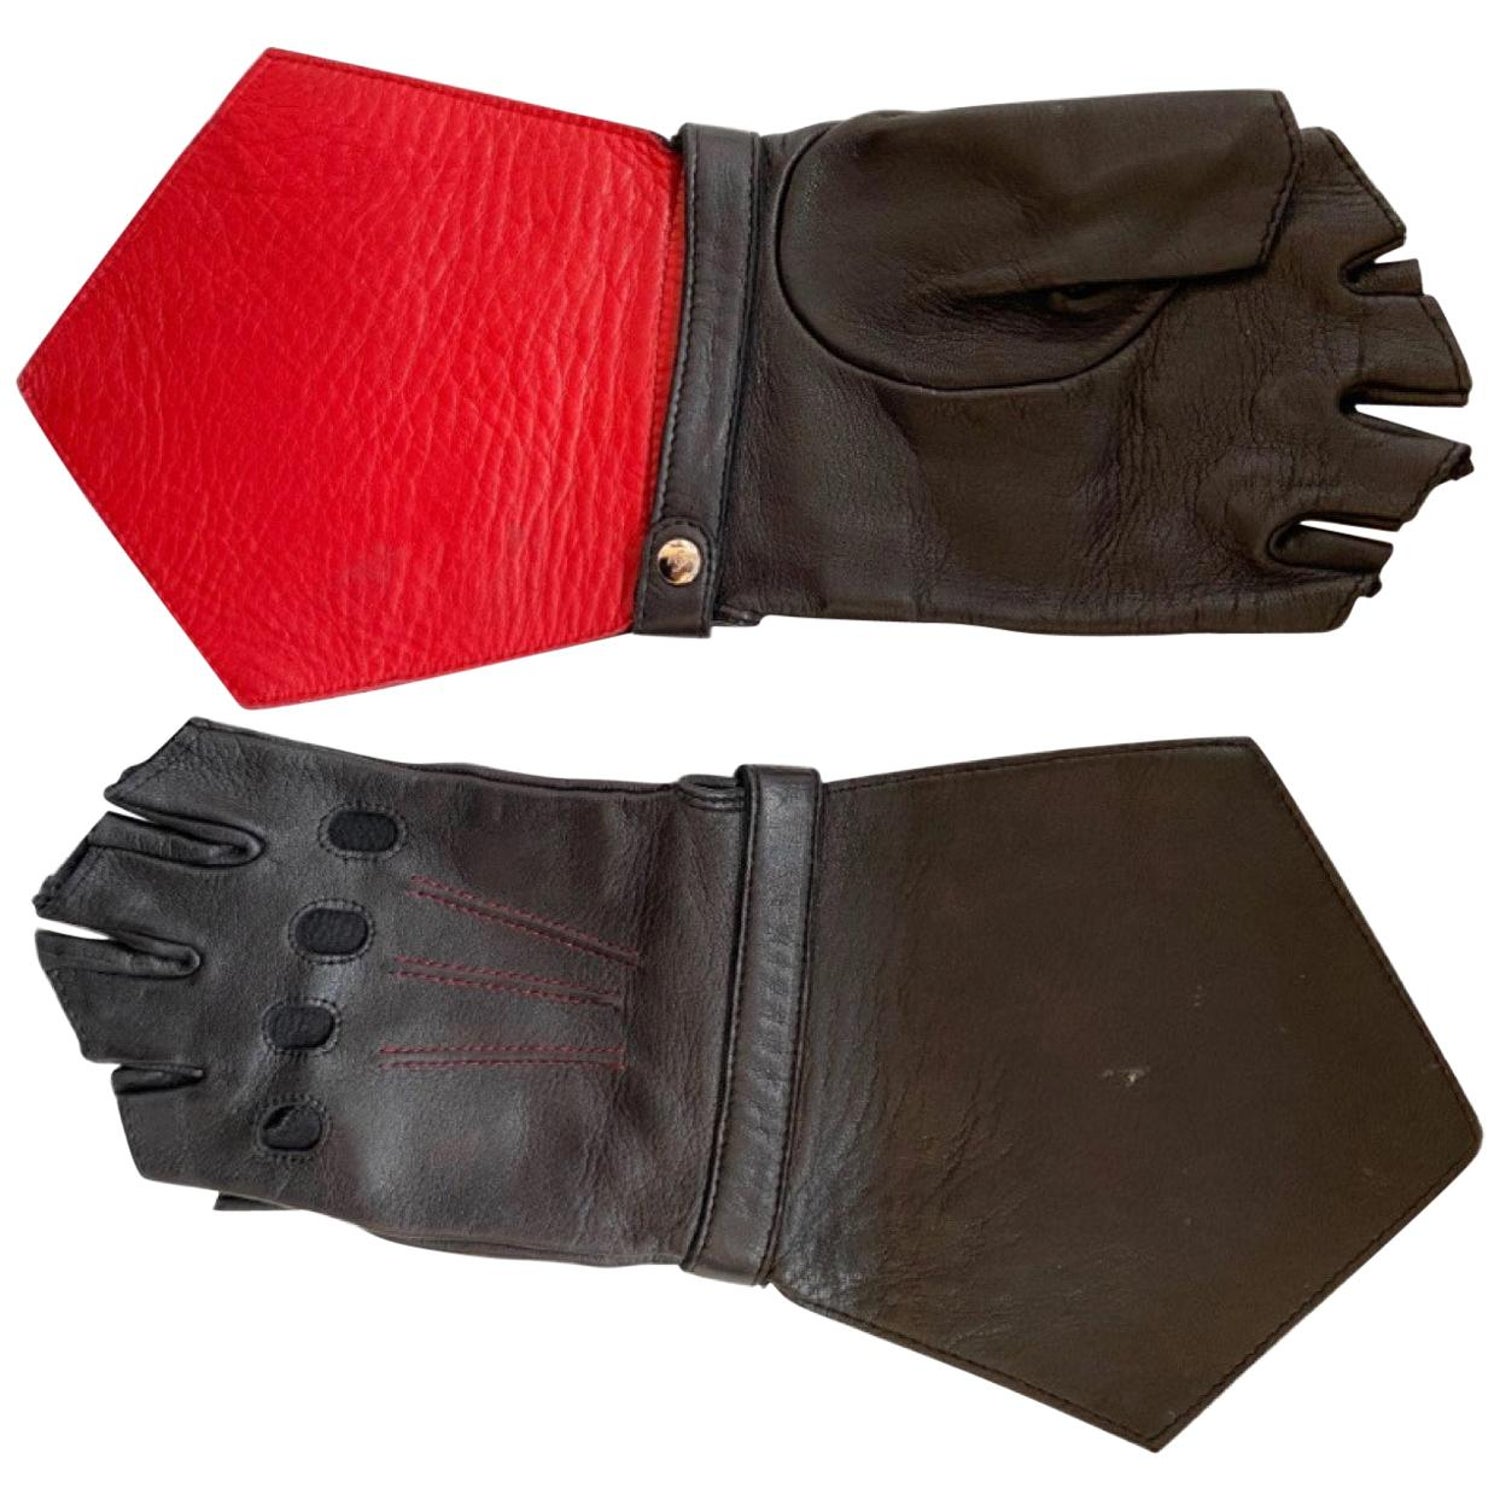 Chanel Fingerless Gloves - 2 For Sale on 1stDibs | chanel gloves, chanel. gloves, chanel gloves fingerless